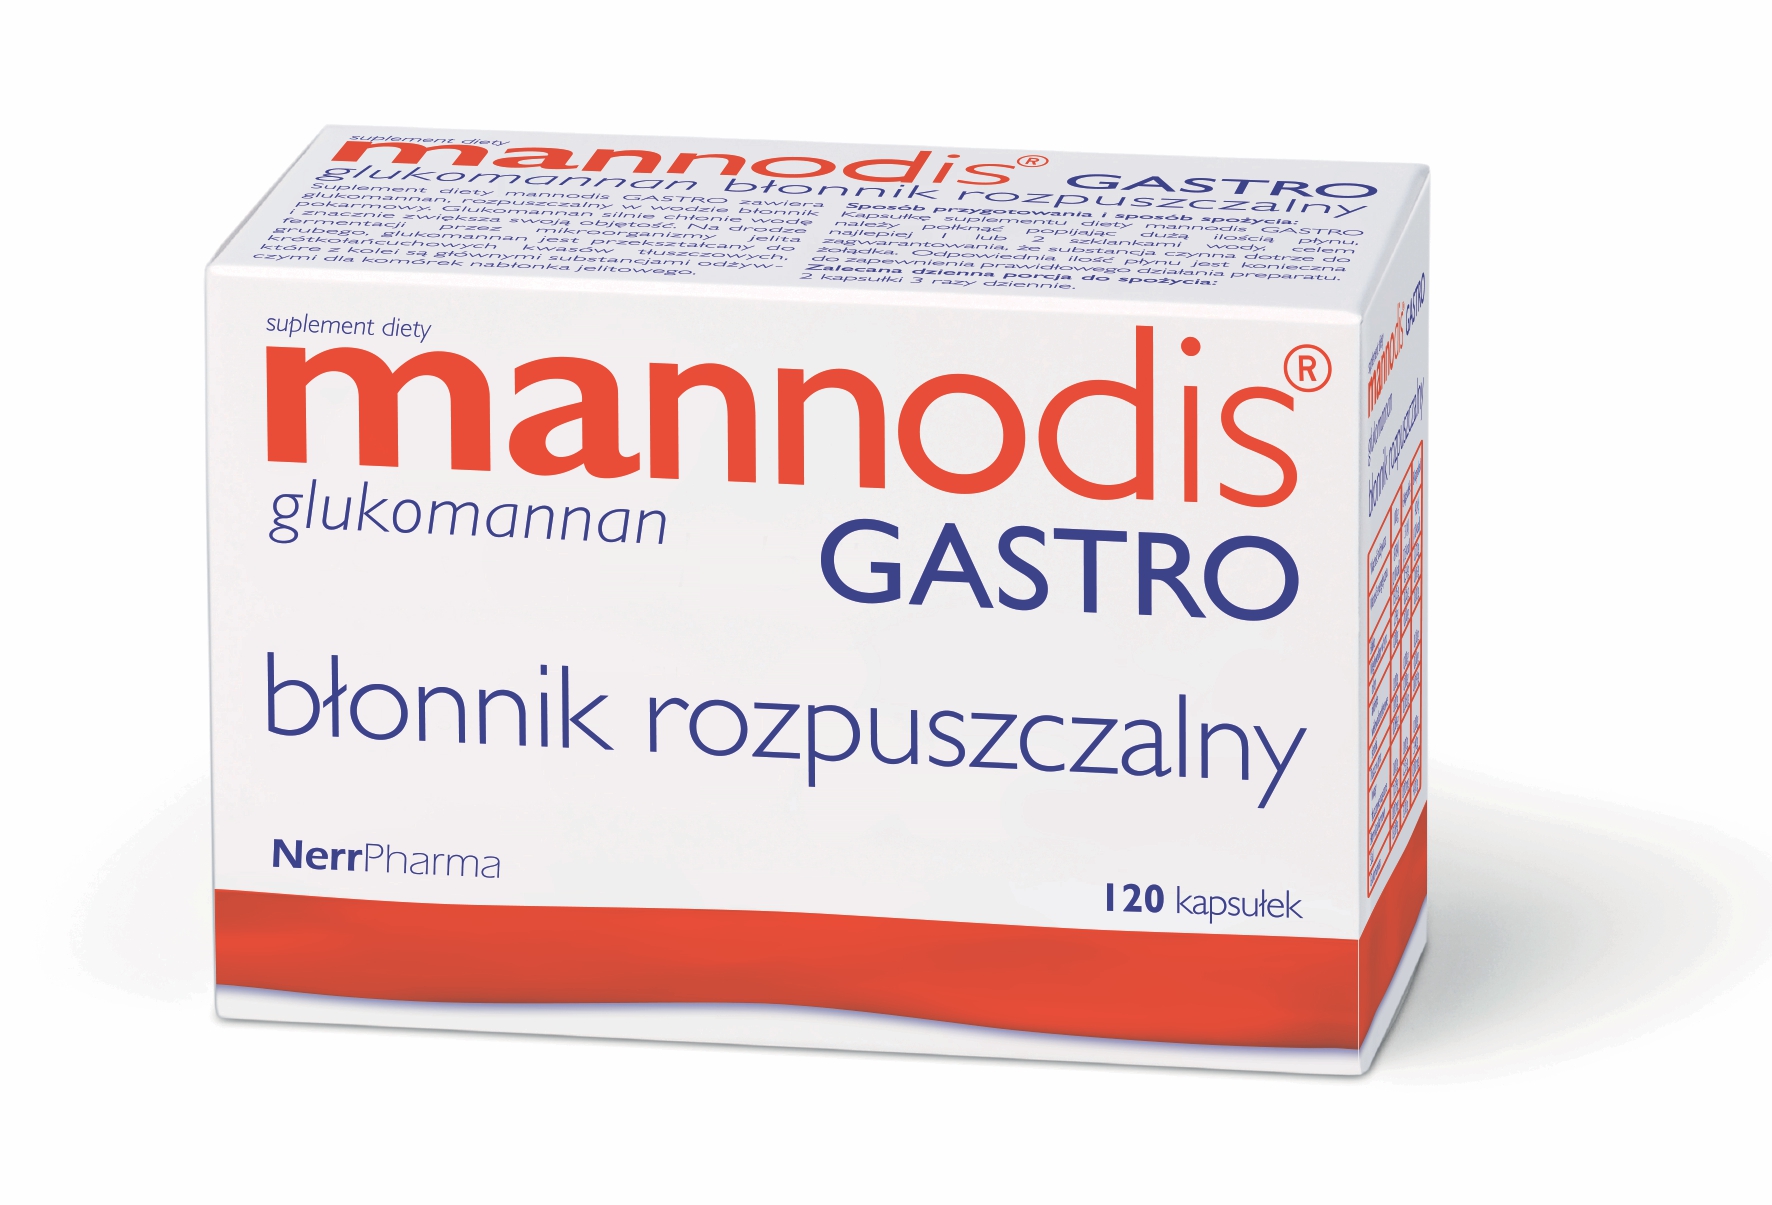 Glukomannan_mannodis